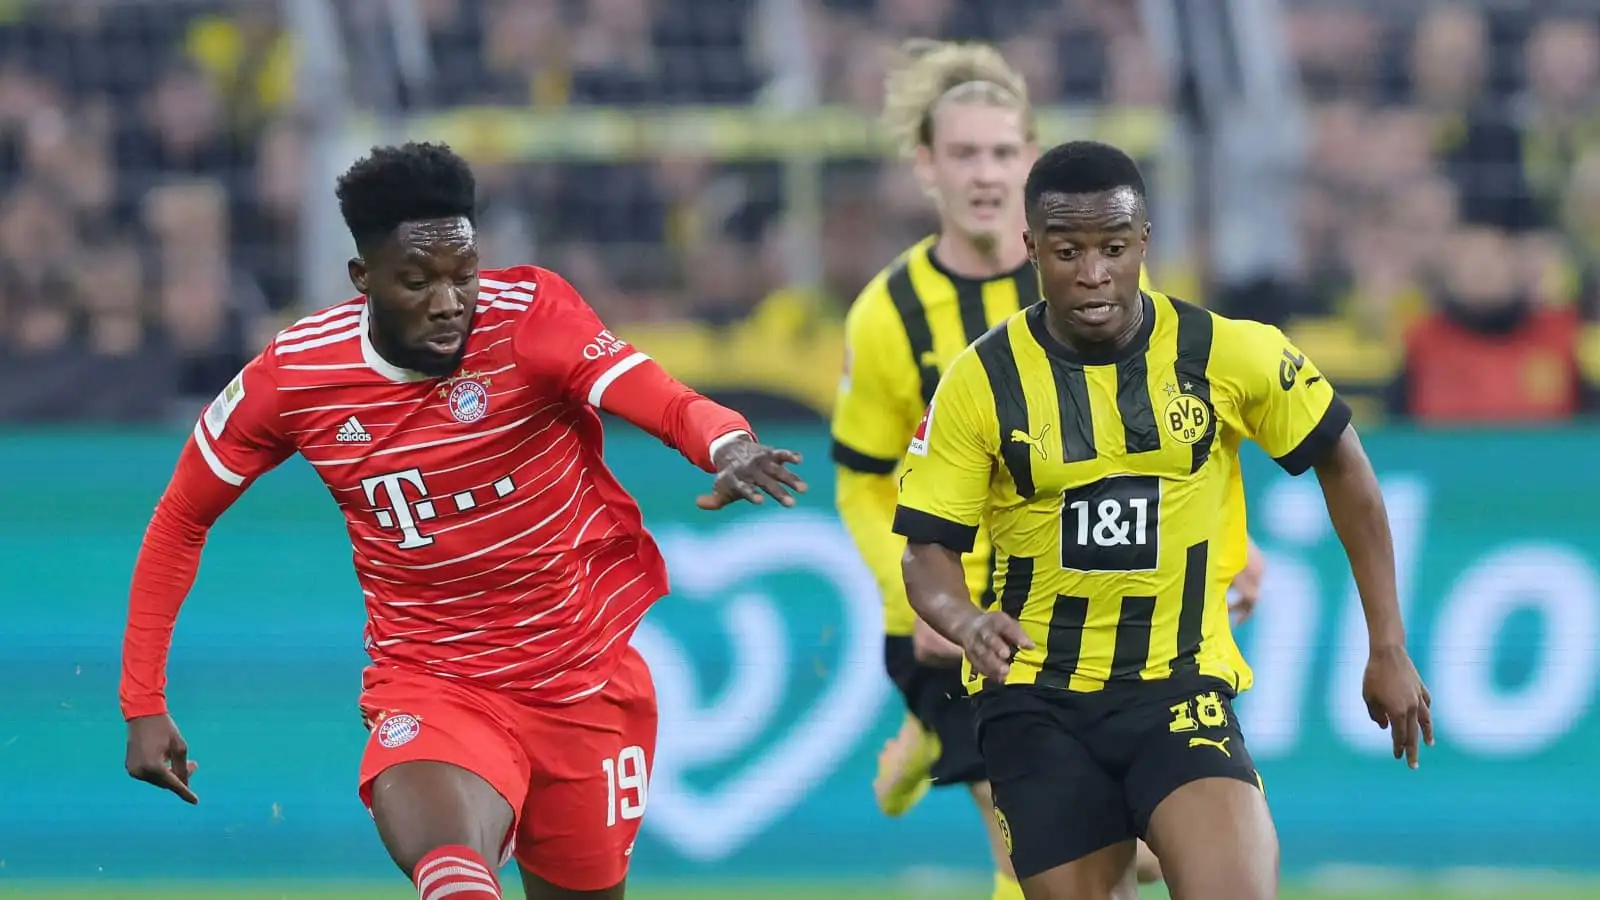 Bayern Munich defender Alphonso Davies tussling with Borussia Dortmund striker Yousouffa Moukoko